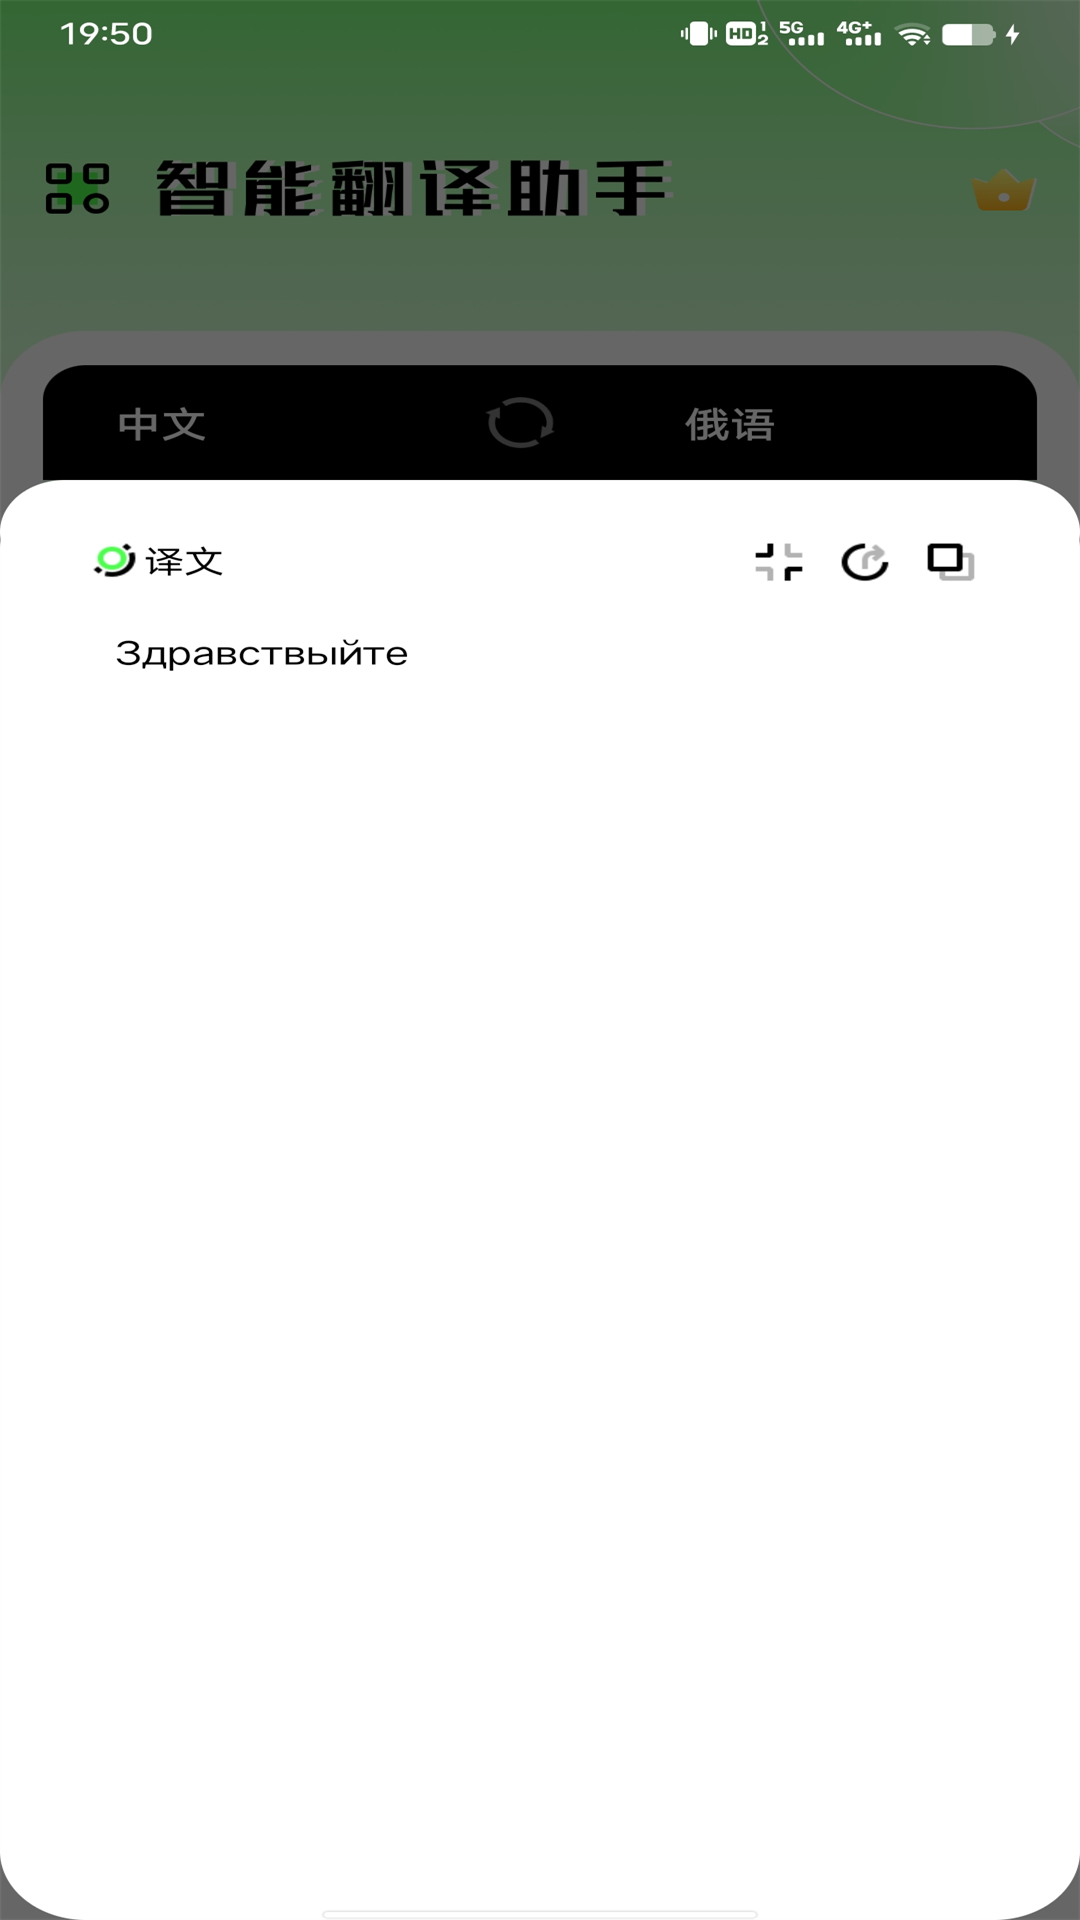 俄语翻译器v1.0.0截图3